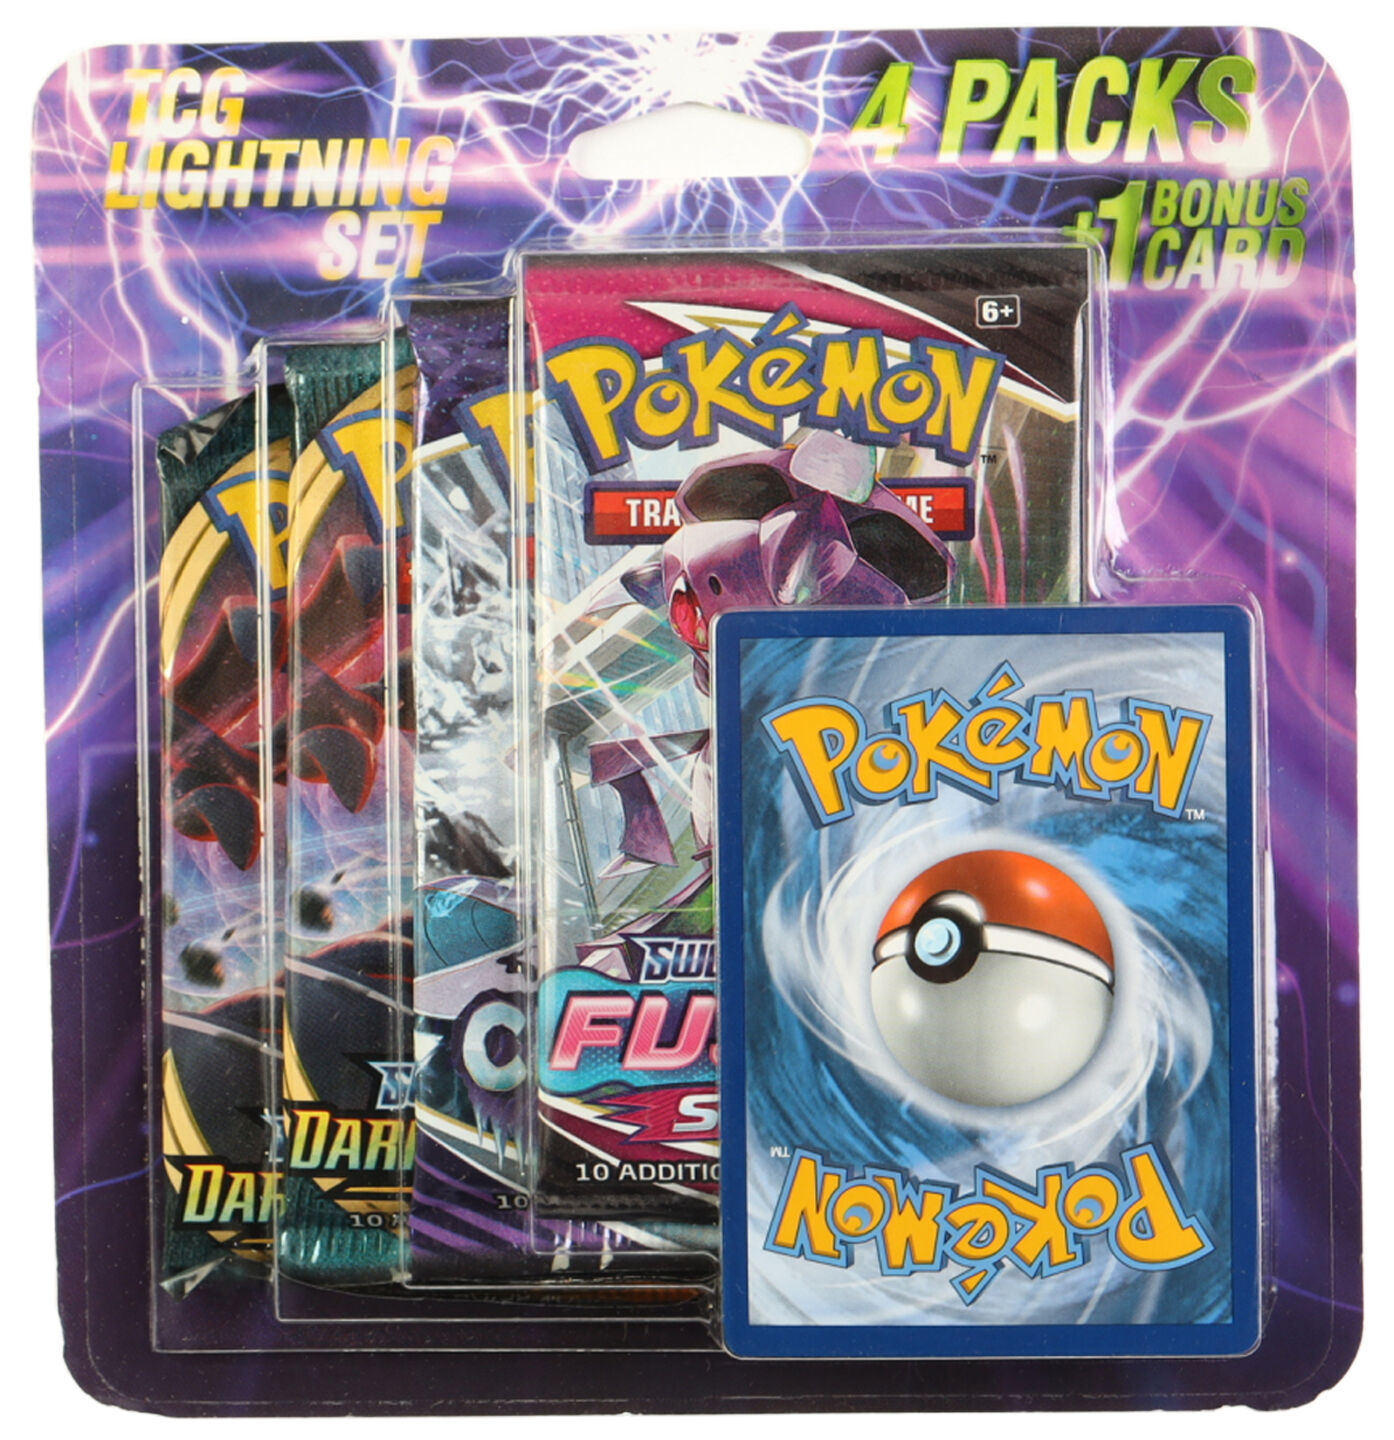 Pokémon TCG Lightning Set 4 Packs + 1 Bonus Card Blister Pack - EN